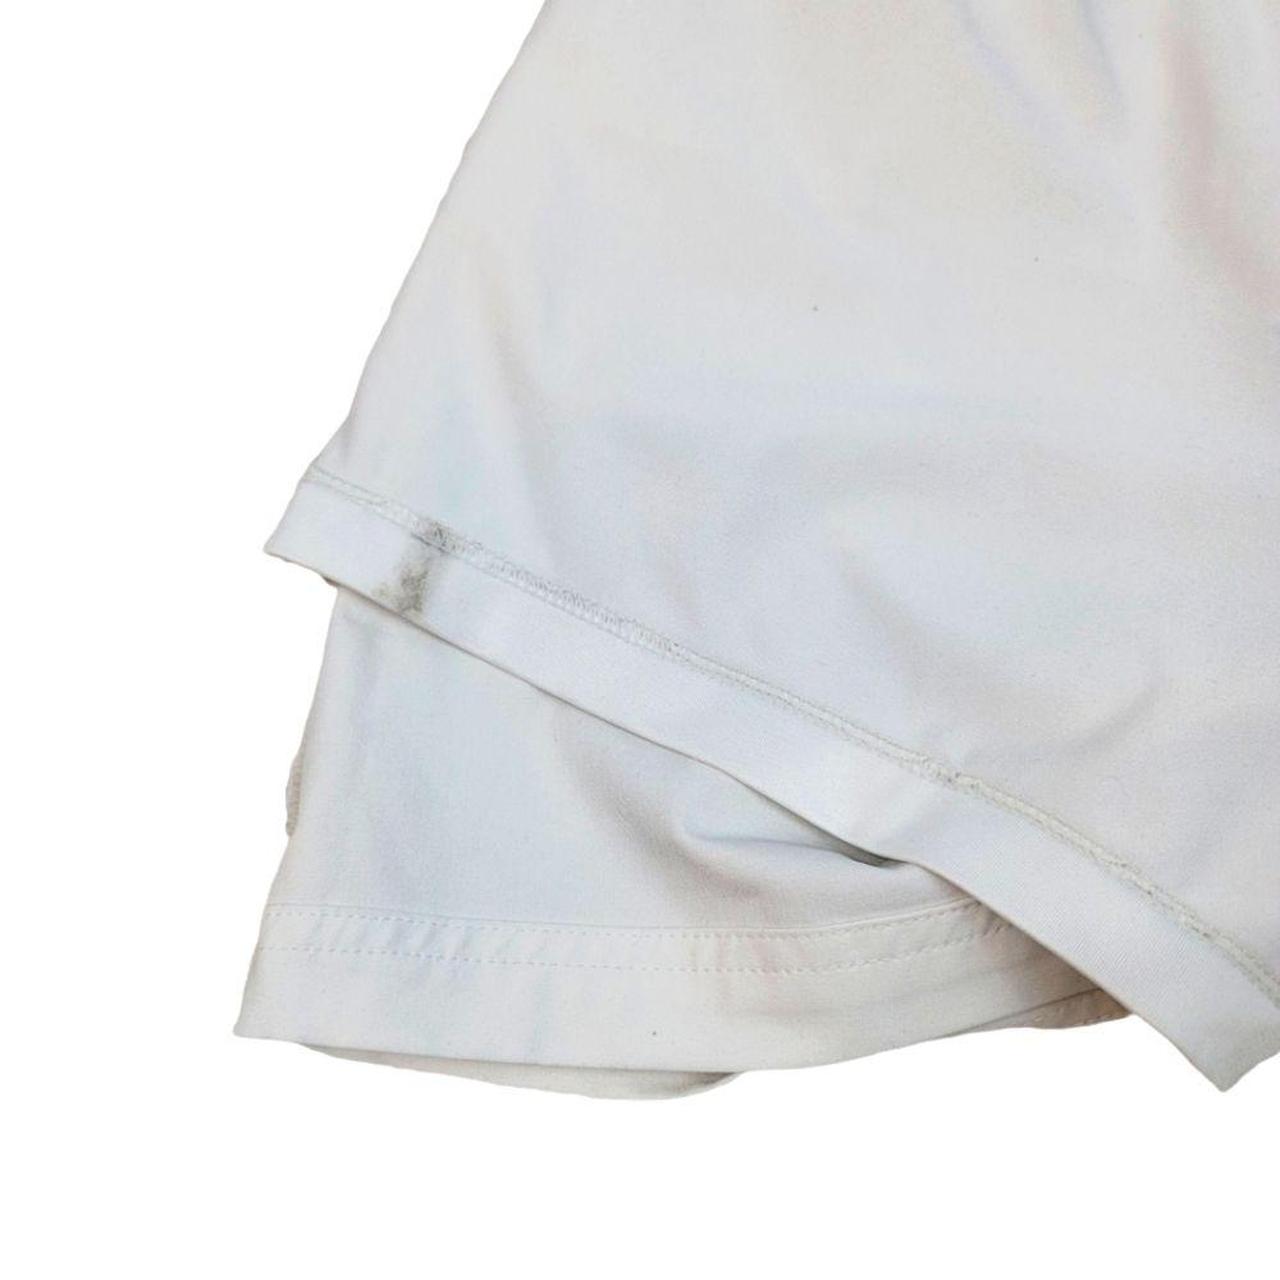 Product Image 3 - Slazenger White Tennis Skirt/Skort

Size Medium